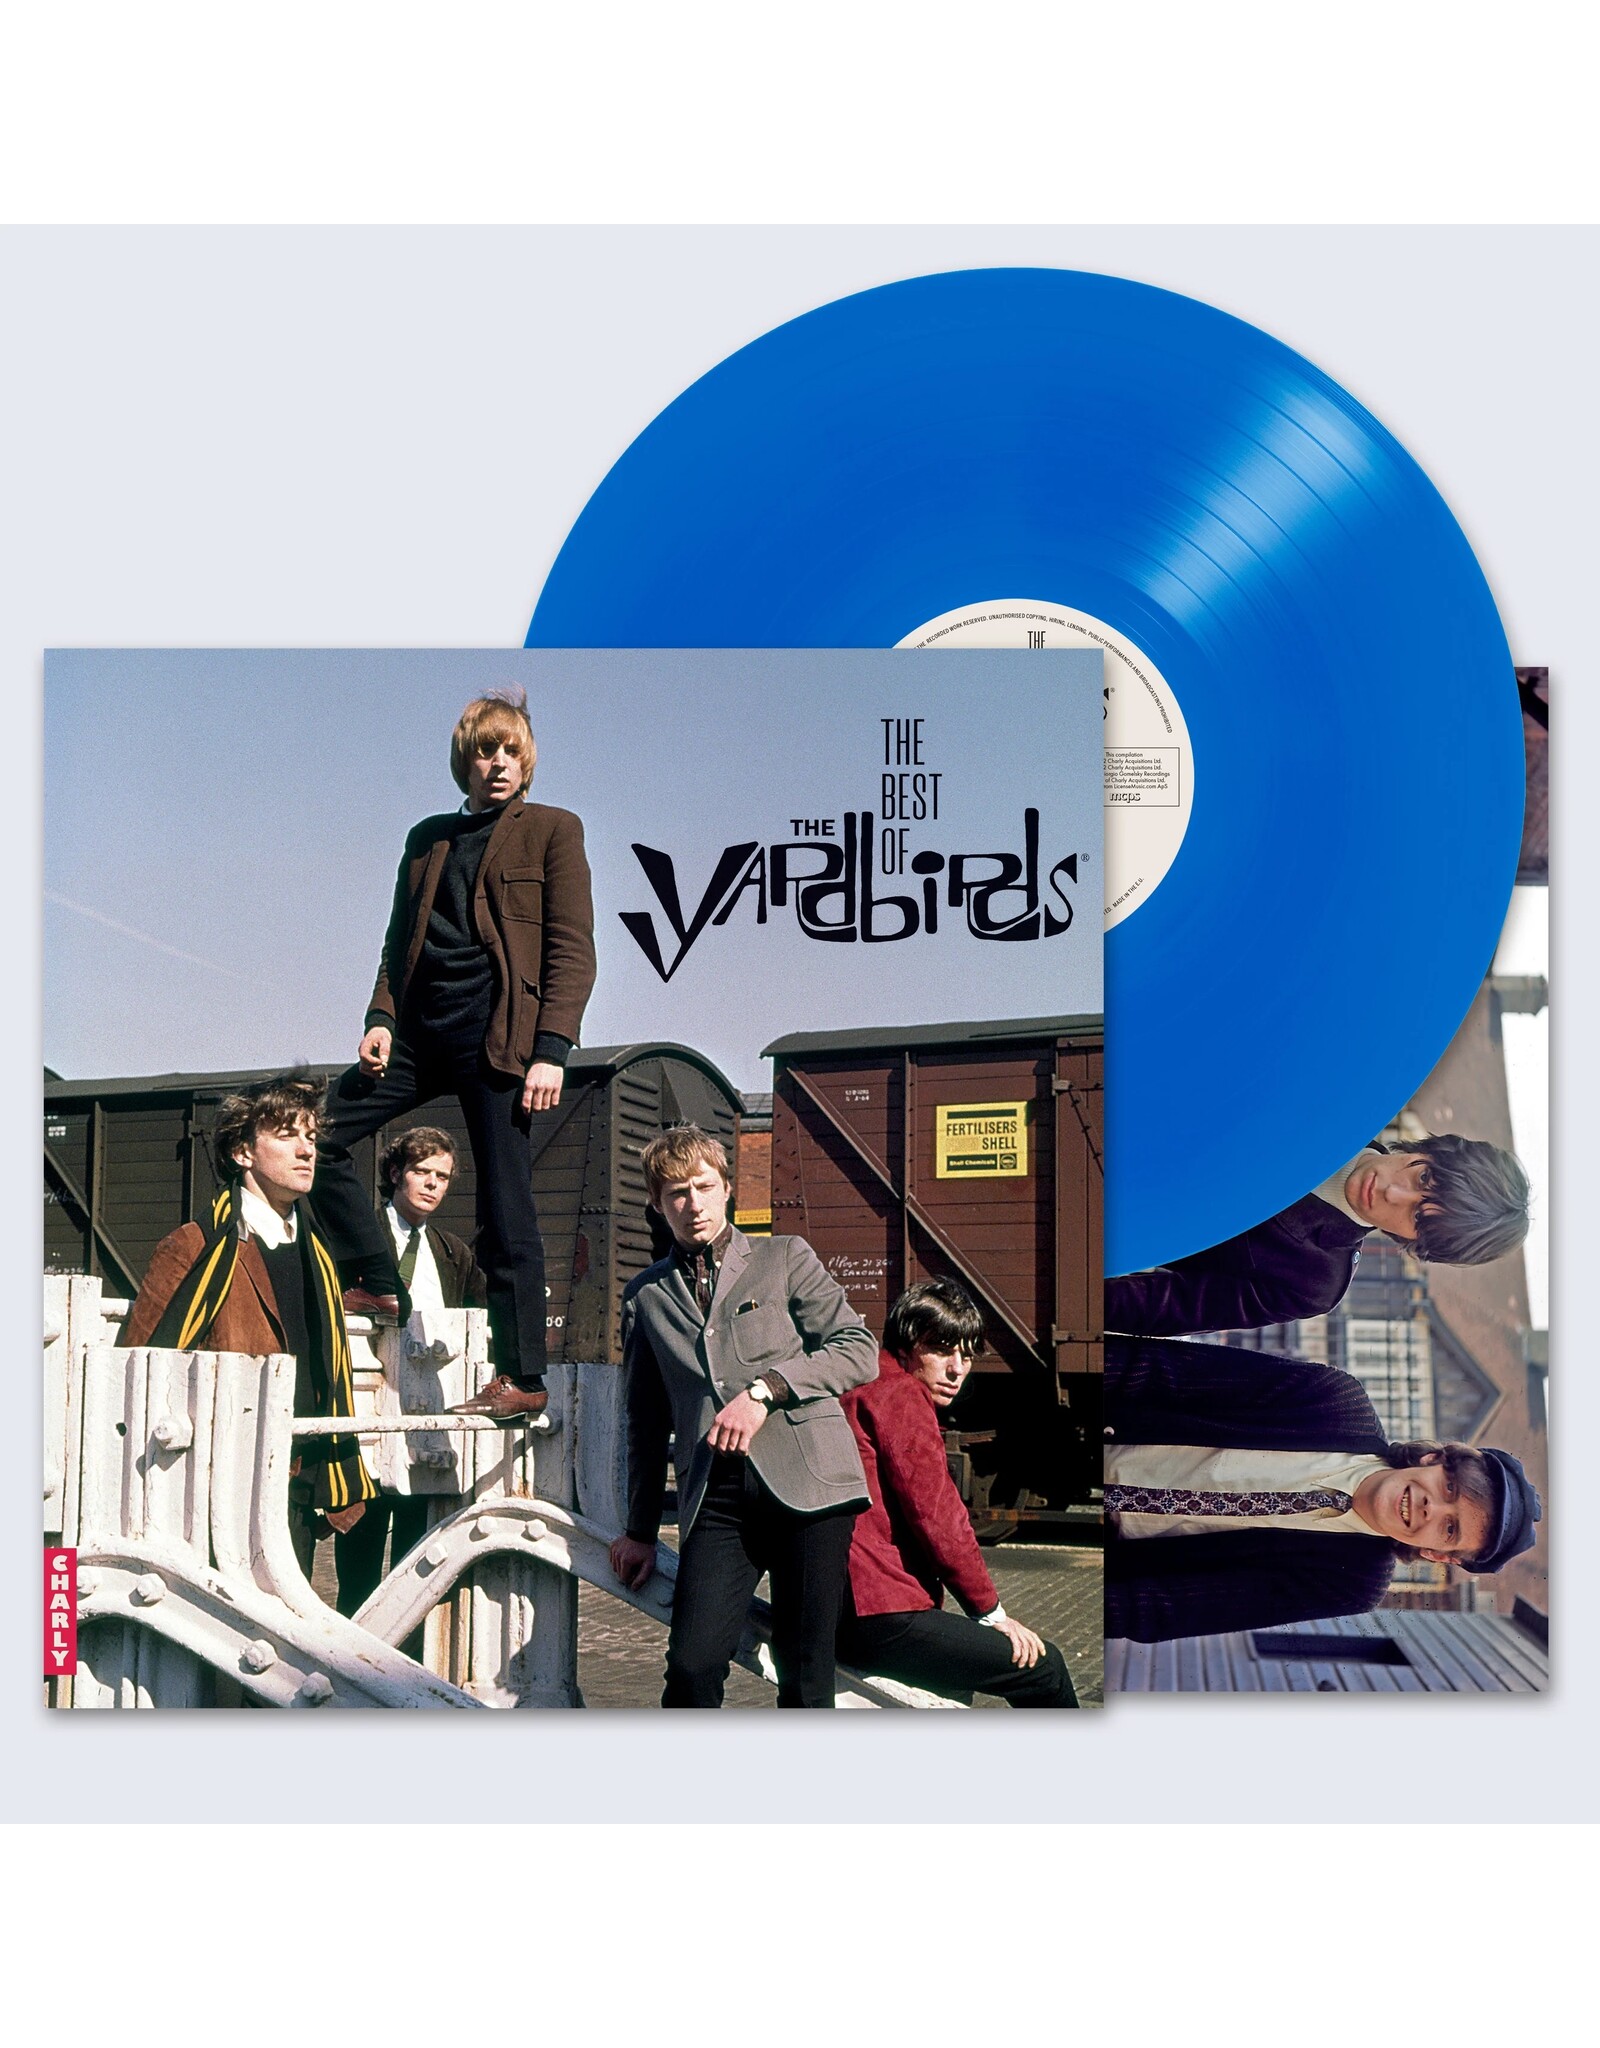 Yardbirds - The Best Of The Yardbirds (Blue Vinyl)